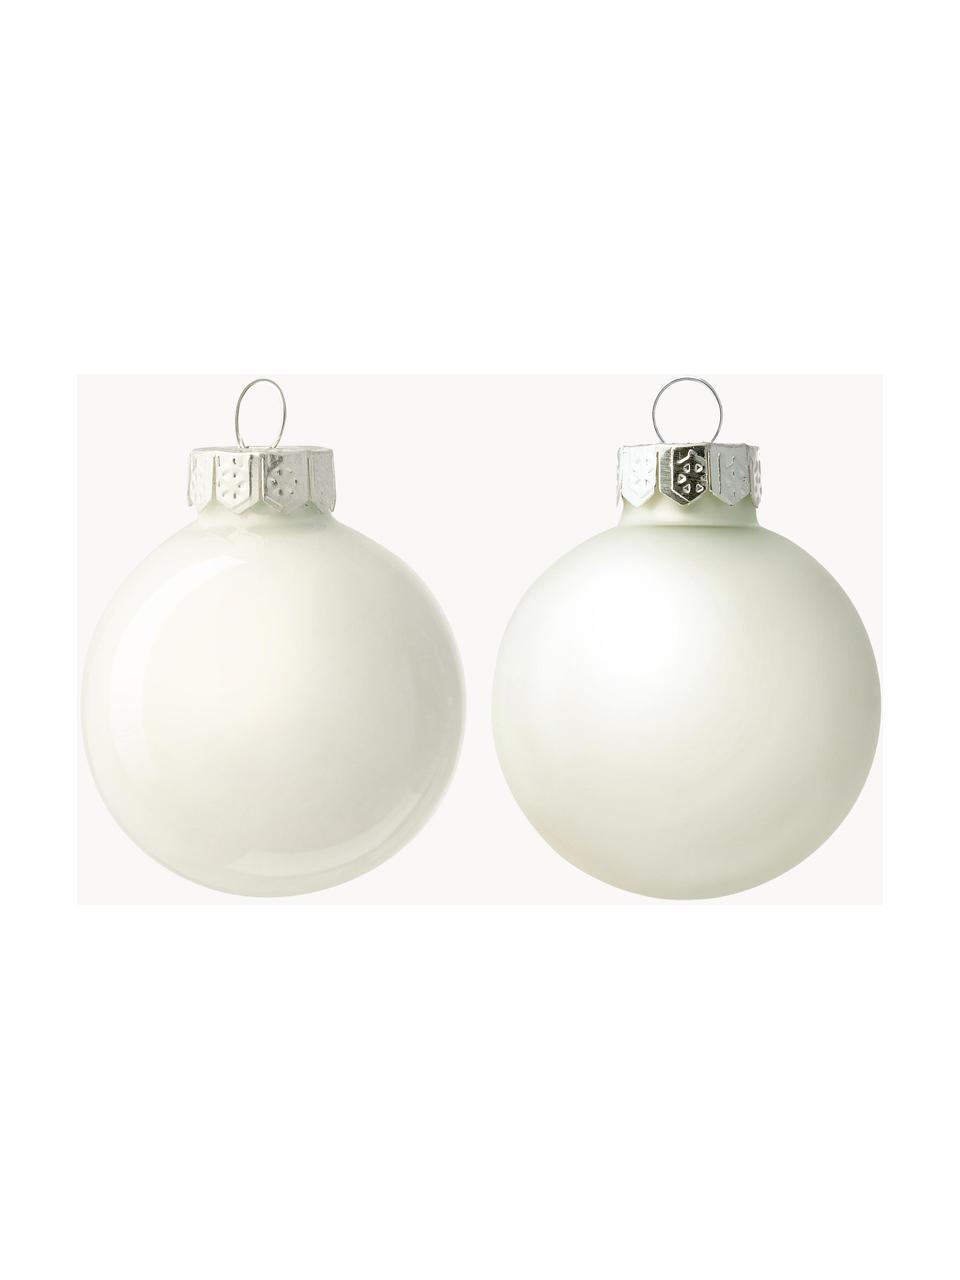 Set de bolas de Navidad Evergreen, 16 uds., Blanco, Ø 4 cm, 16 uds.